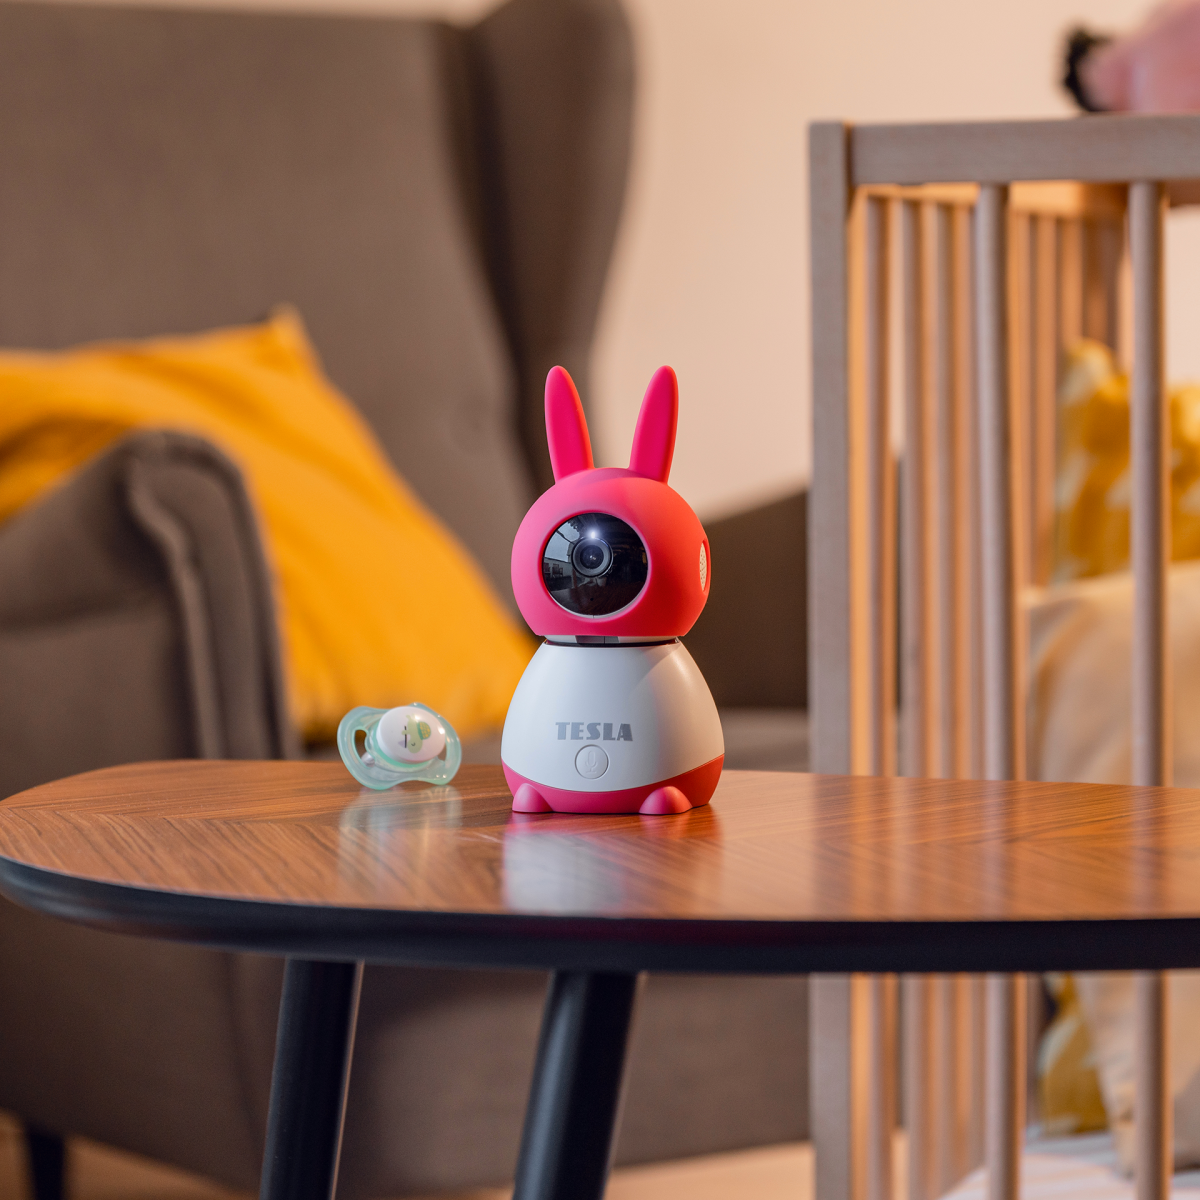 Chůvička TESLA Smart Camera 360 Baby je umístěná na dřevěném stole vedle dětské postýlky